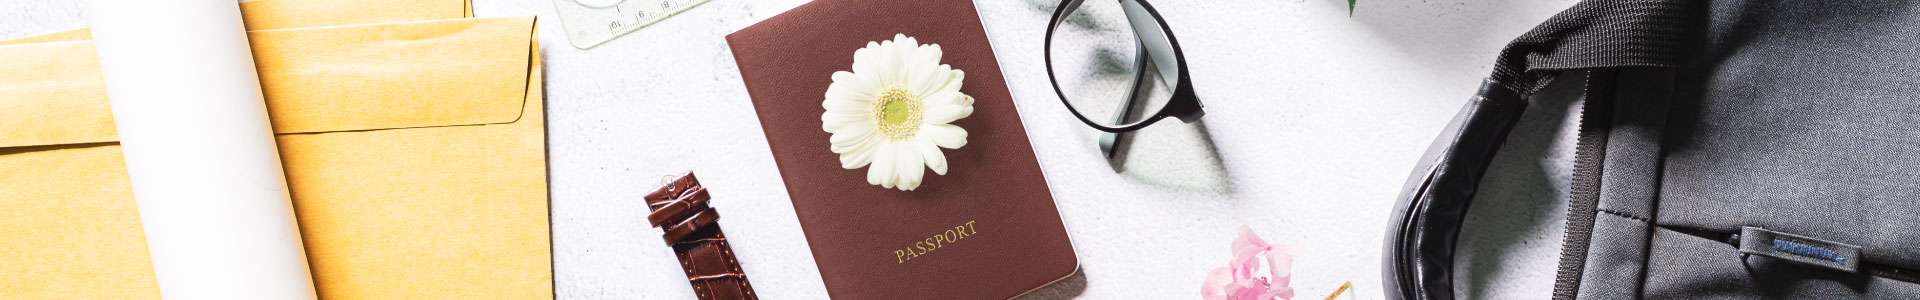 Plano general de pasaporta, gafas, maleta, reloj y sobres de manila